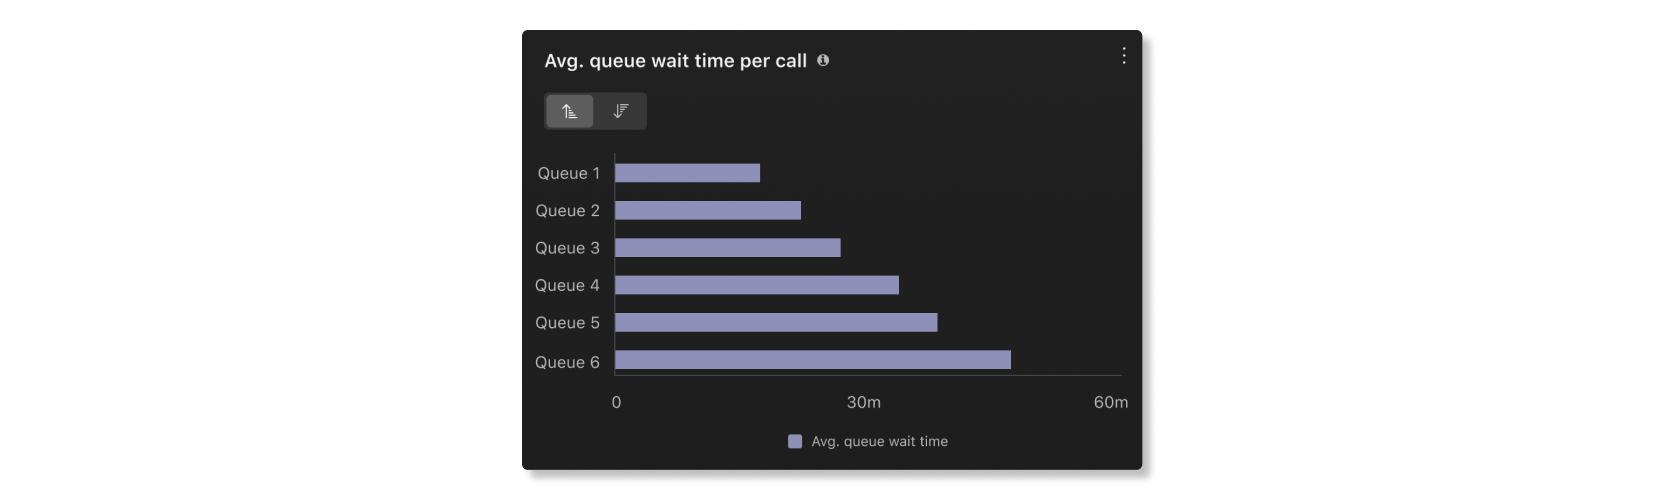 Tempo medio di attesa in coda per grafico chiamate nella sezione desktop Supervisore dell'analisi Elementi essenziali del cliente